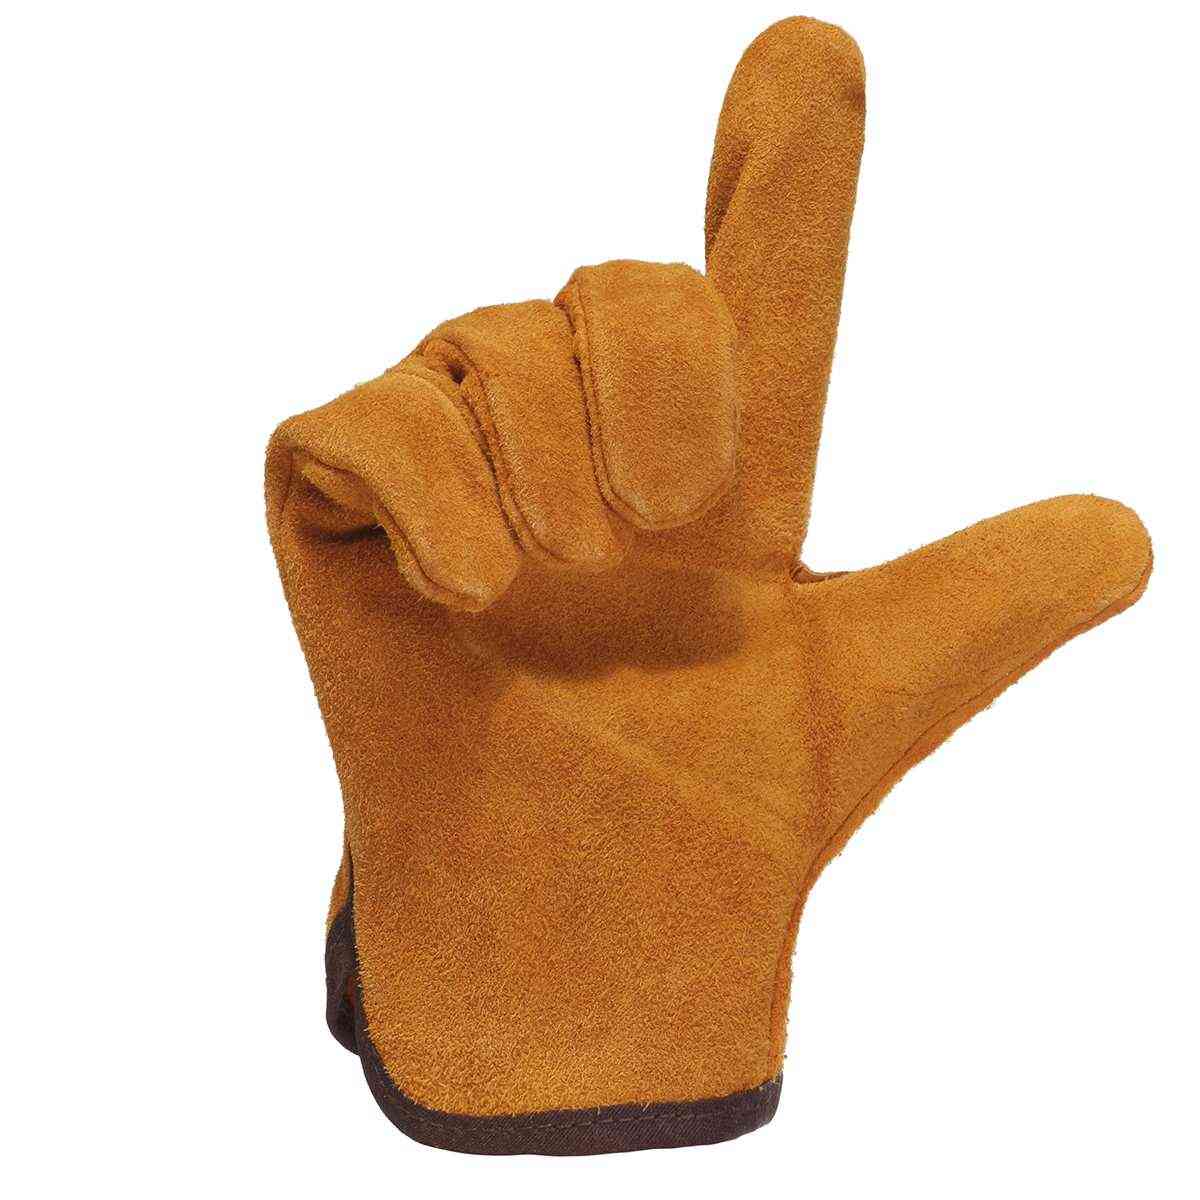 Fireproof Leather Welder Gloves, Anti-heat Work Safety Gloves